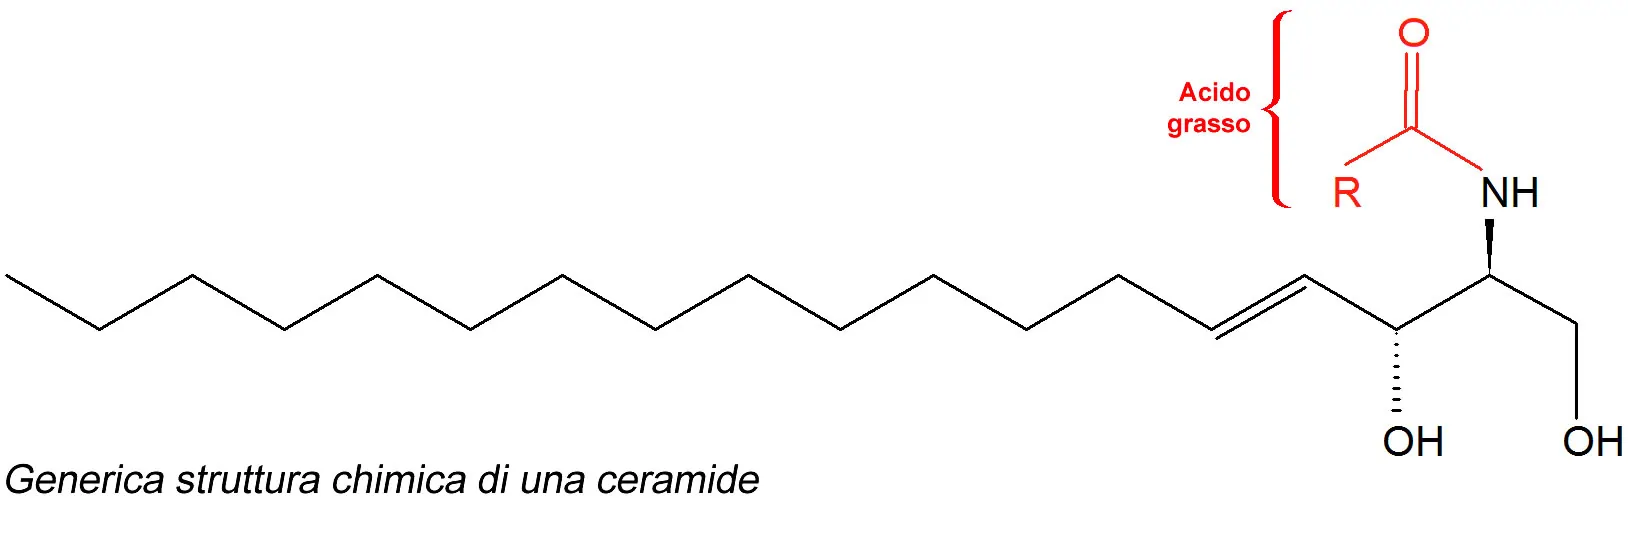 ceramide - struttura chimica